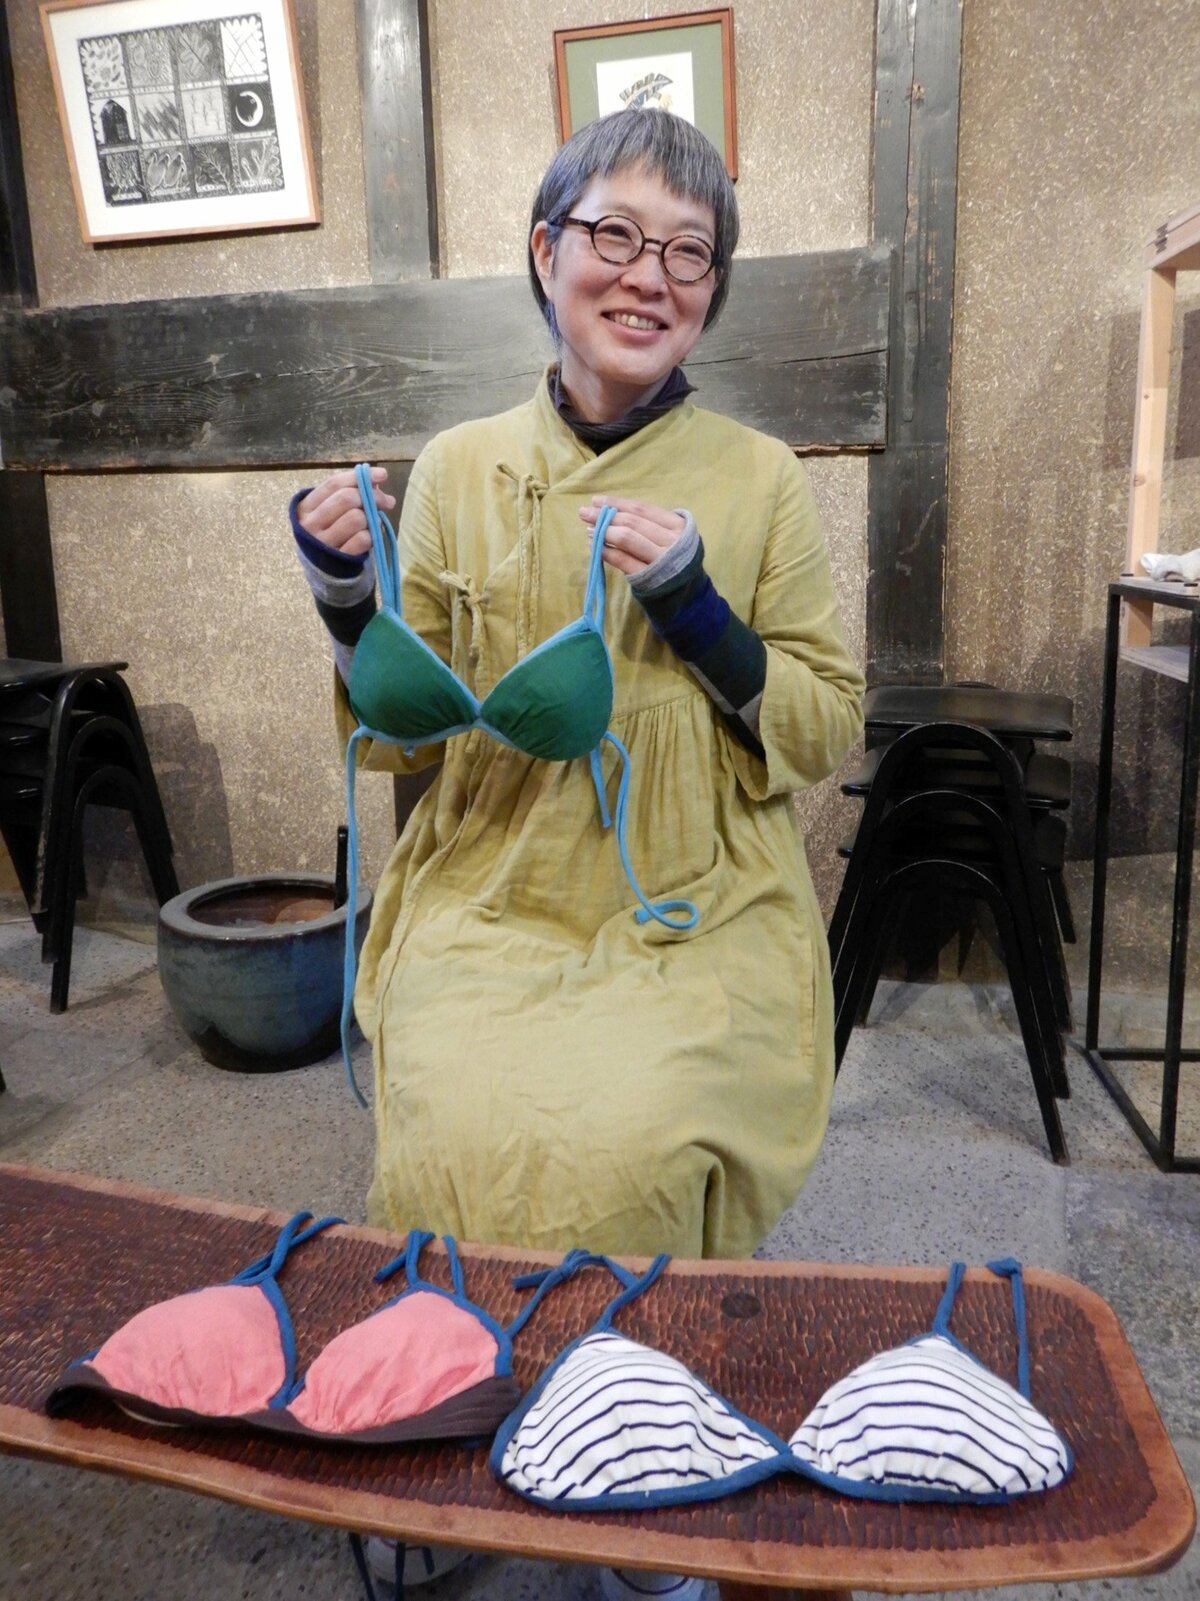 ふわふわブラジャー 手作りできます お肌トラブル回避も 京都の洋服作家が考案 社会 地域のニュース 京都新聞